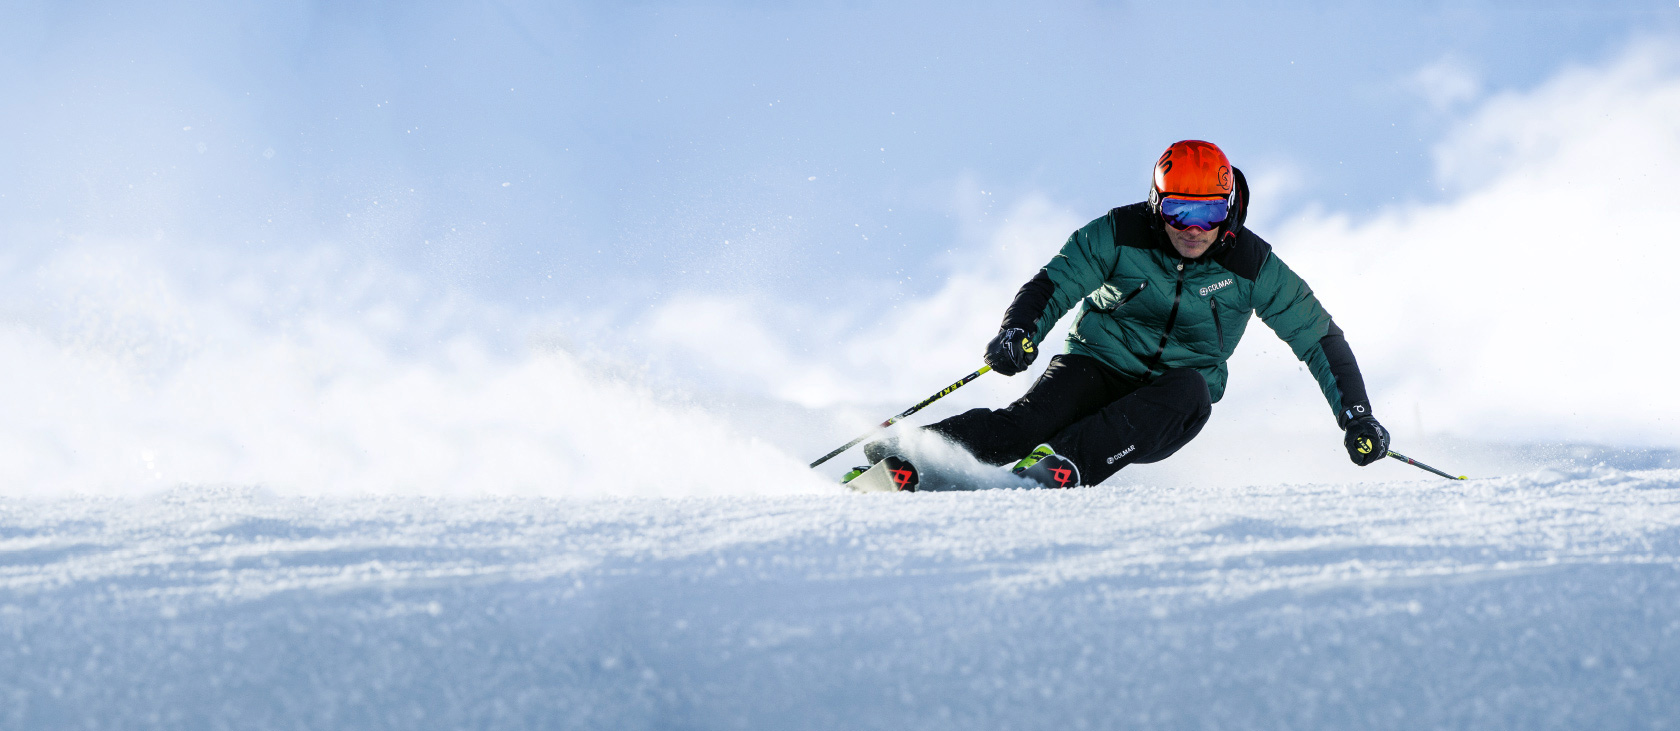 Nuovi arrivi abbigliamento sci e snowboard: approfitta del 40% di sconto -  Bottero Ski Blog